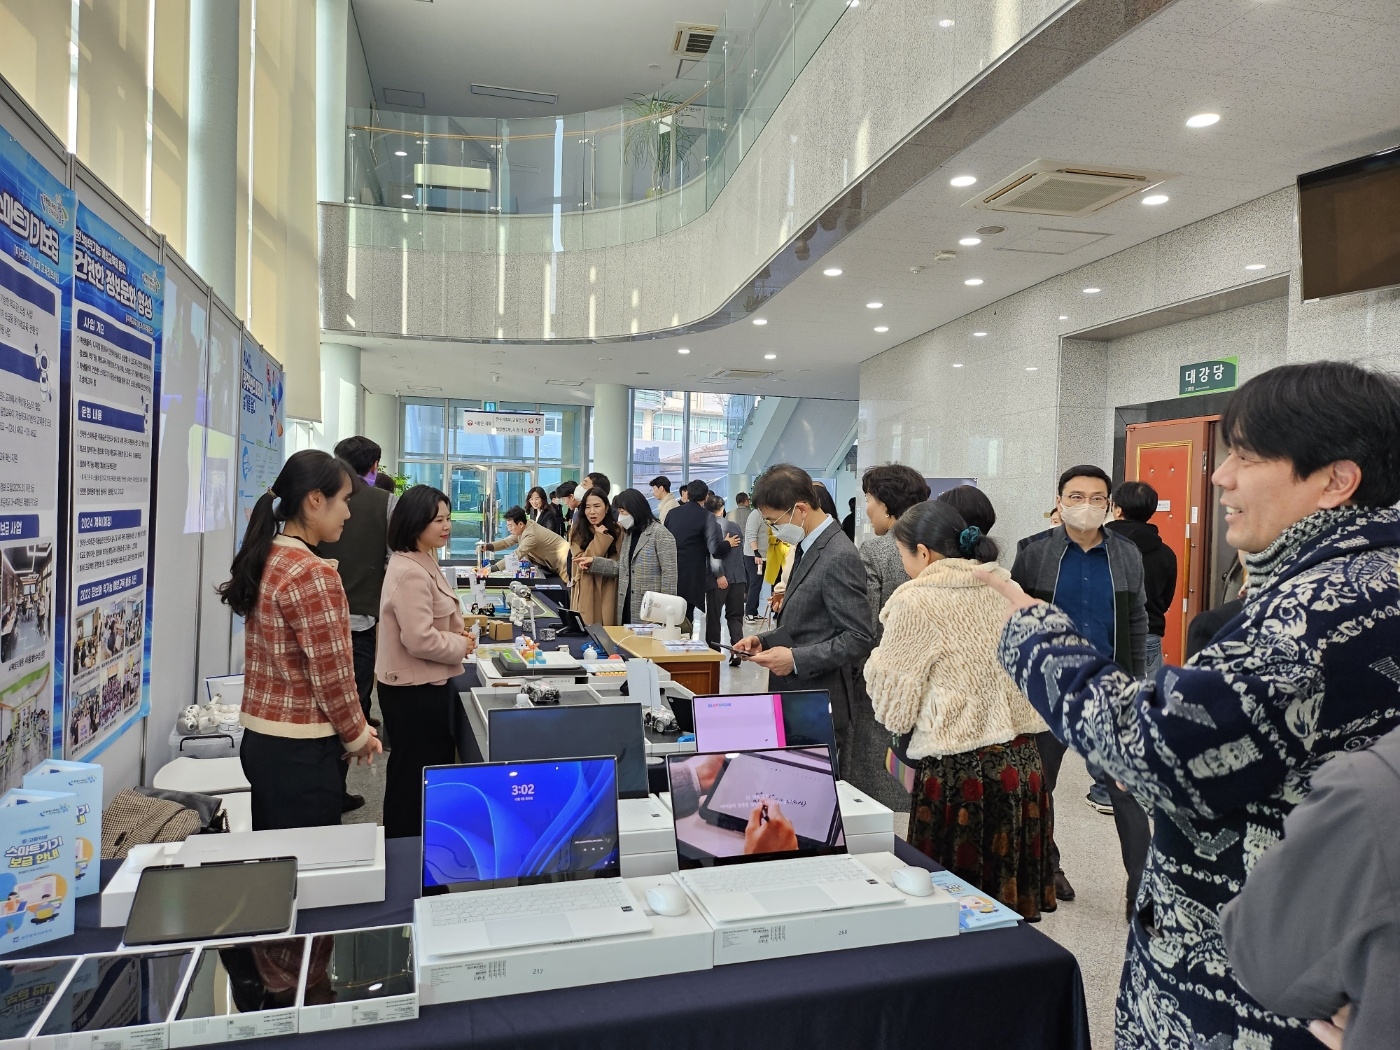 광주시교육청은 최근 광주교육연수원 대강당에서 ‘AI 광주미래교육 설명회’를 개최했다. 광주시교육청 제공